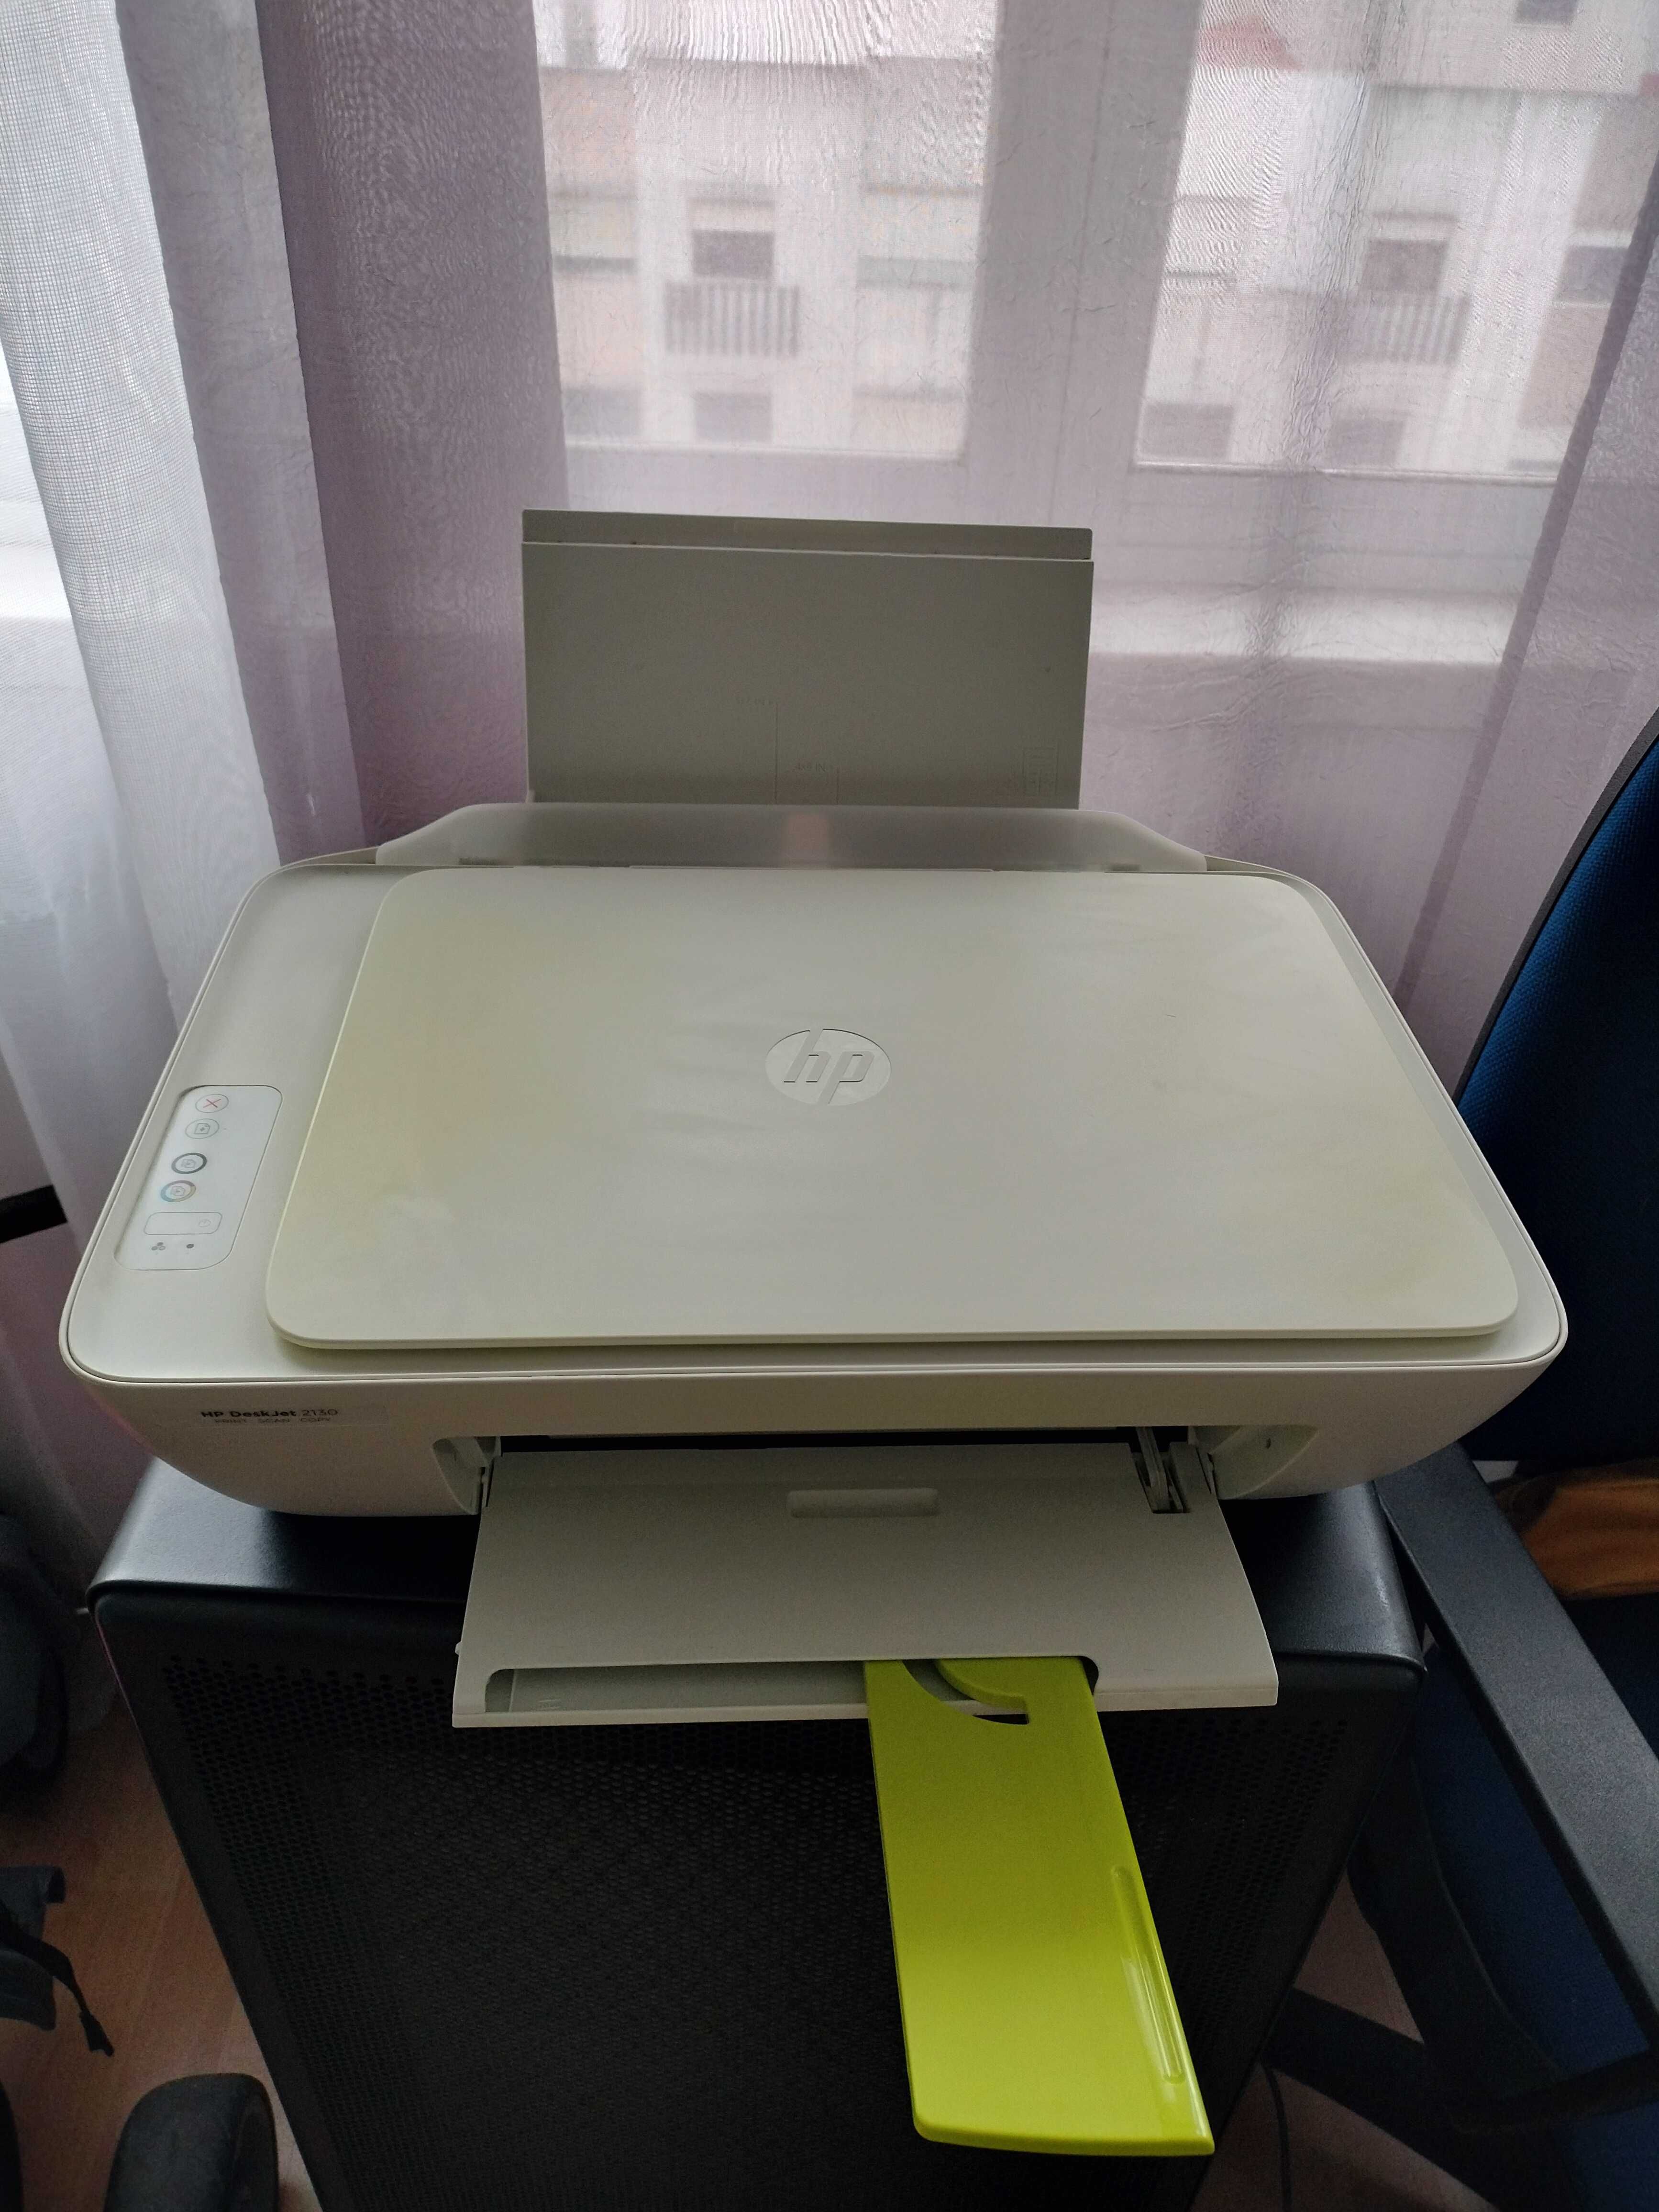 Impressora HP deskjet 2130